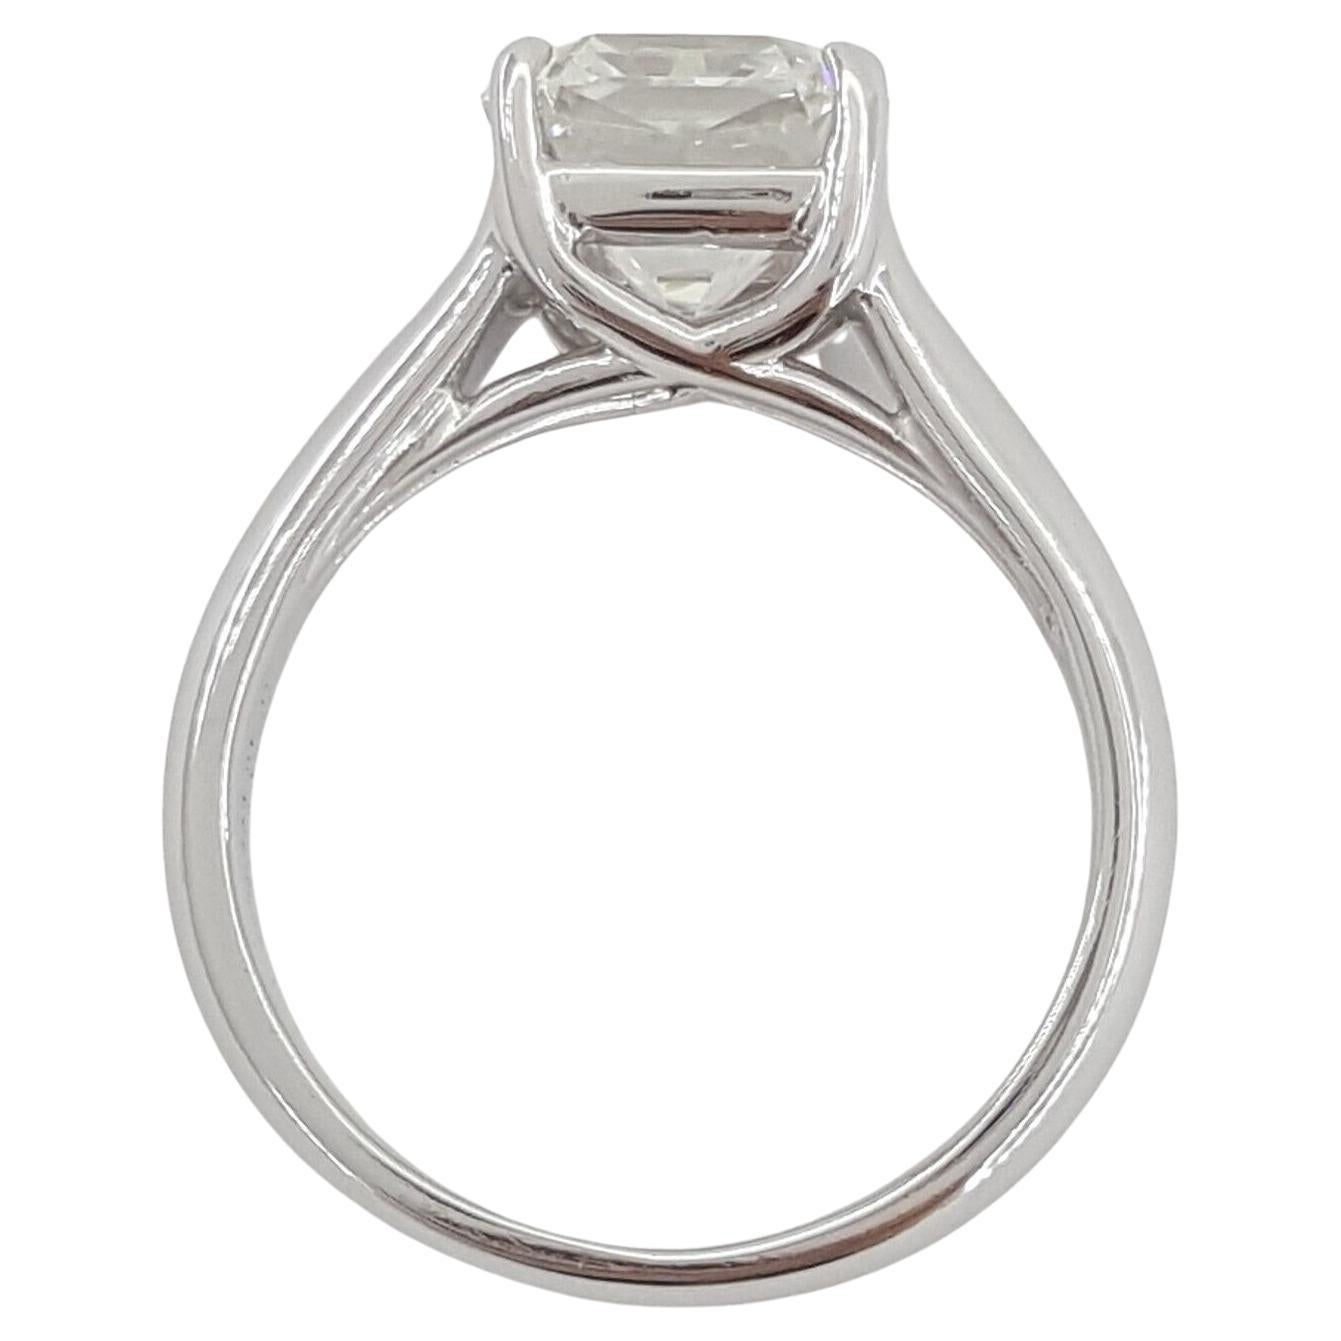  Tiffany & Co. 2.16 ct Platinum Lucida Square Brilliant Cut Diamond Solitaire Engagement Ring. 



La bague pèse 6,1 grammes, taille 4,5, la pierre centrale est un diamant Natural Lucida Cut-Cornered Square Brilliant Cut pesant 2,16 ct, de couleur